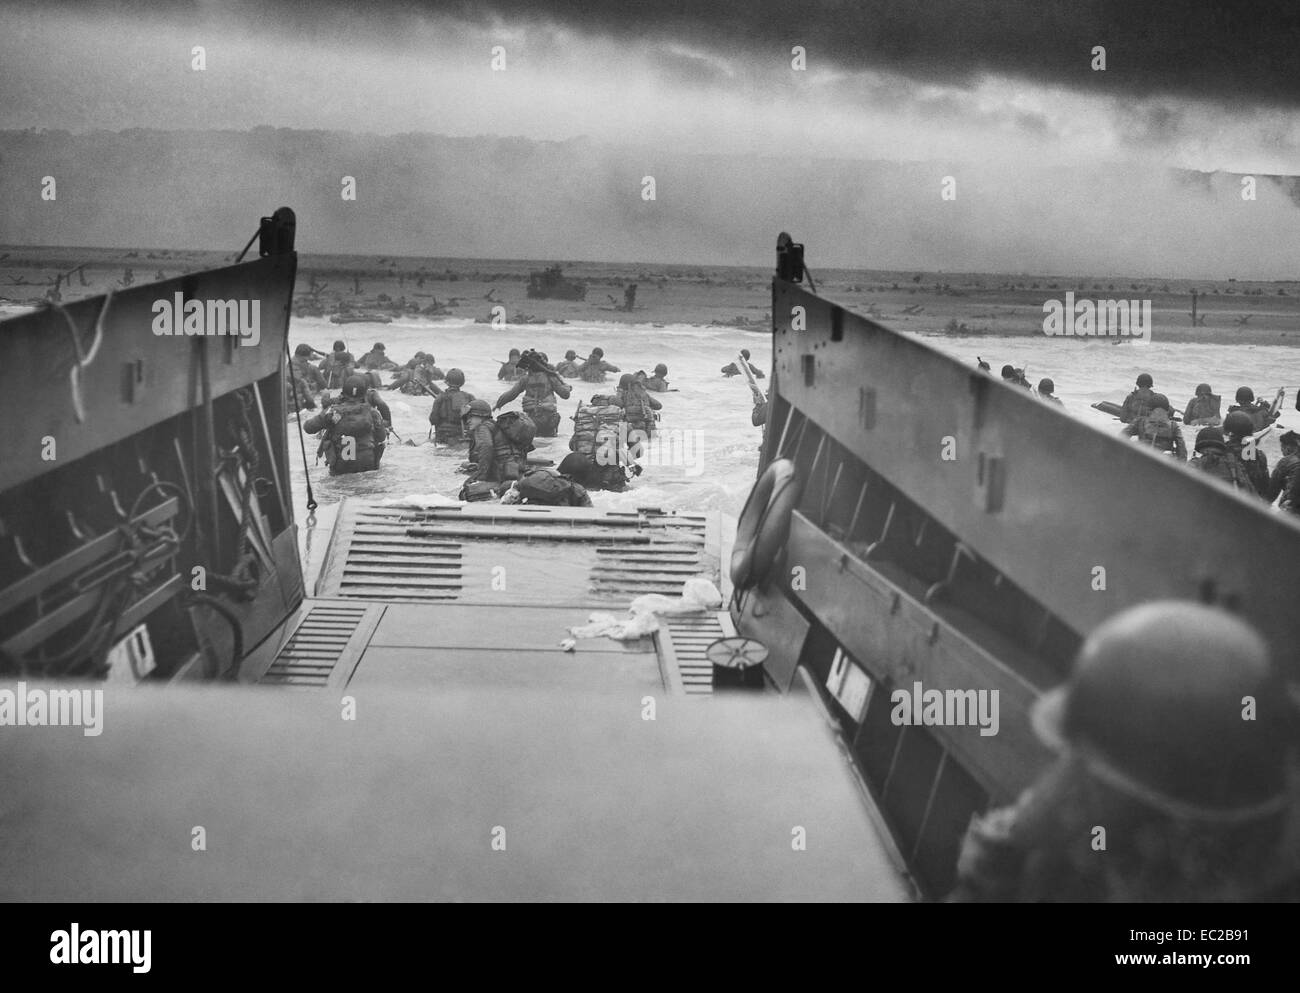 US-Soldaten von Unternehmen E, 16. Infanterie, 1. US-Infanteriedivision Wade an Land auf den Fox-Grün-Bereich von Omaha Beach aus einer Küstenwache betrieben Landungsboote LCVP während der d-Day Invasion 6. Juni 1944 in Calvados, Basse-Normandie, Frankreich. Amerikanische Soldaten begegnet den neu gegründeten Deutschen 352. Division bei der Landung. Während der ersten zwei Drittel der Unternehmen E Landung wurde Opfer. Stockfoto